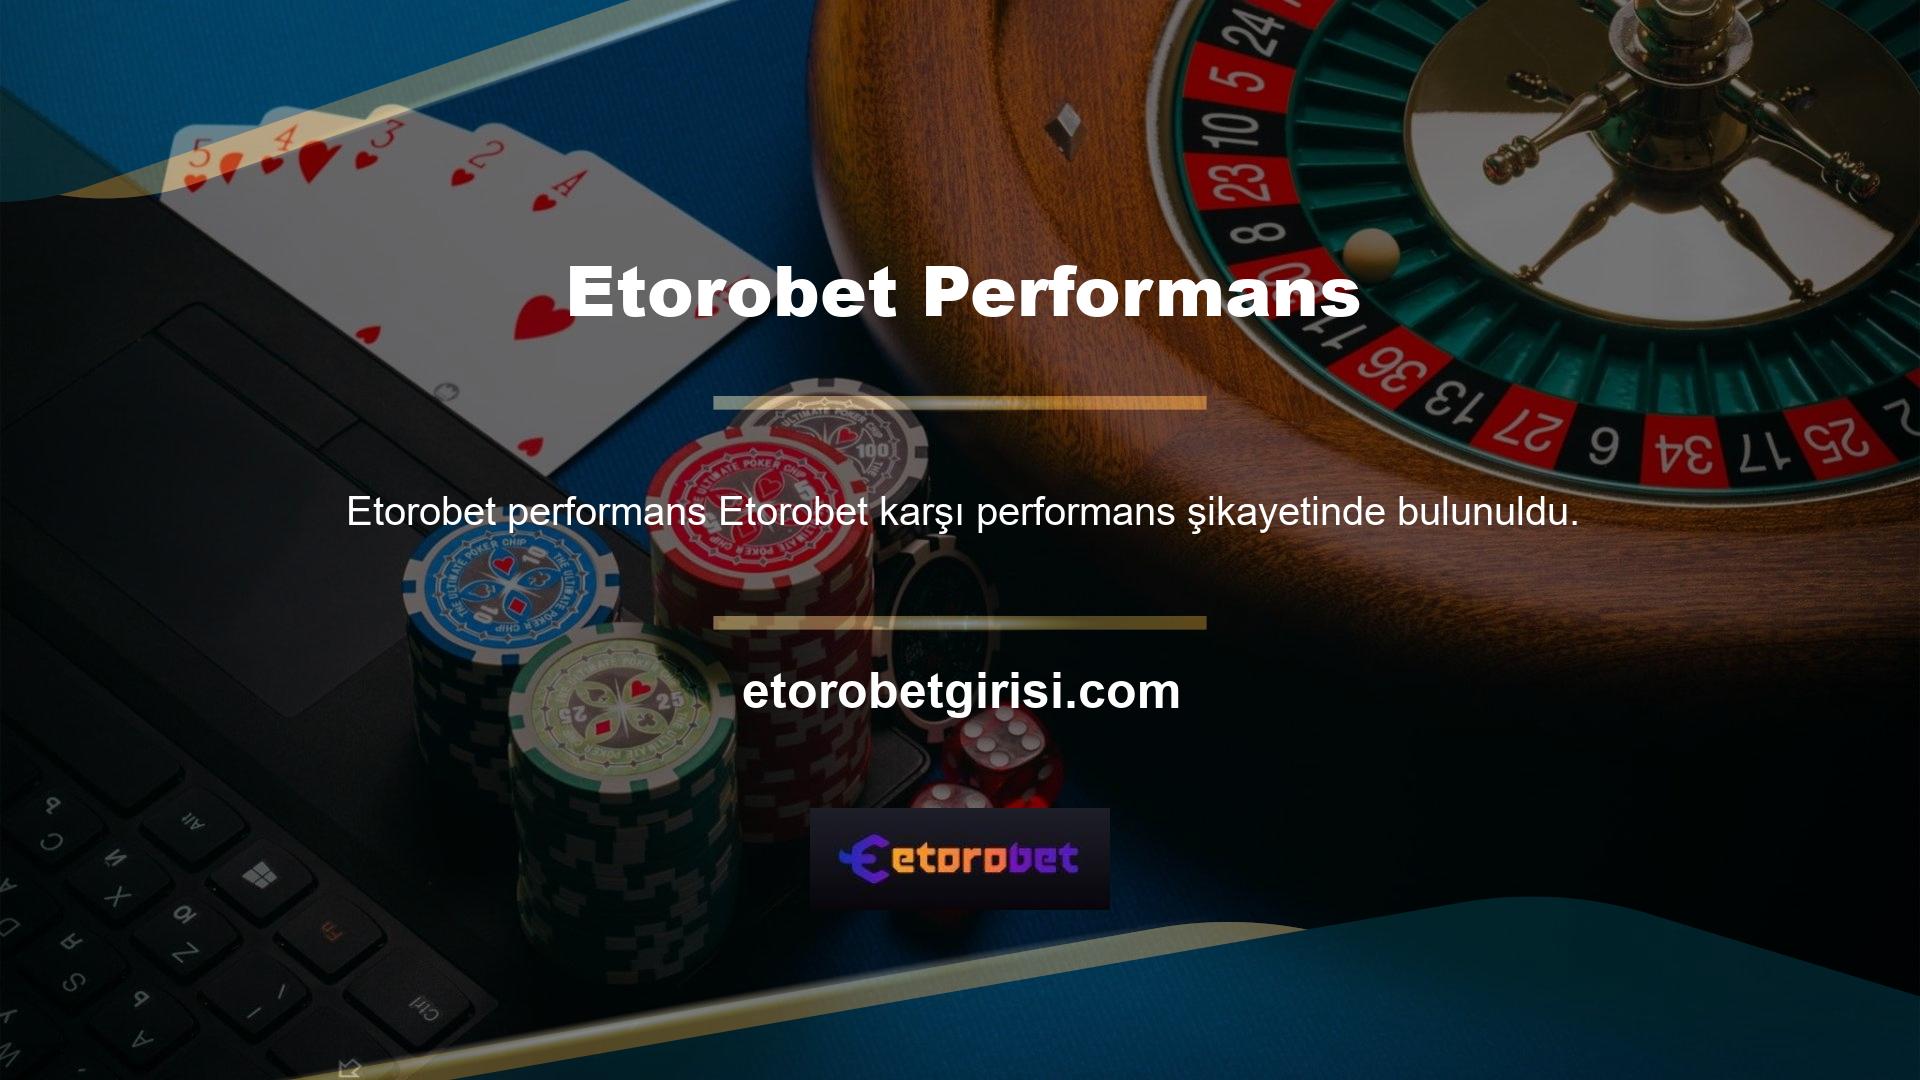 Etorobet sayfasına yapılan şikayet sayısı Türk casino siteleri ortalamasının altındadır